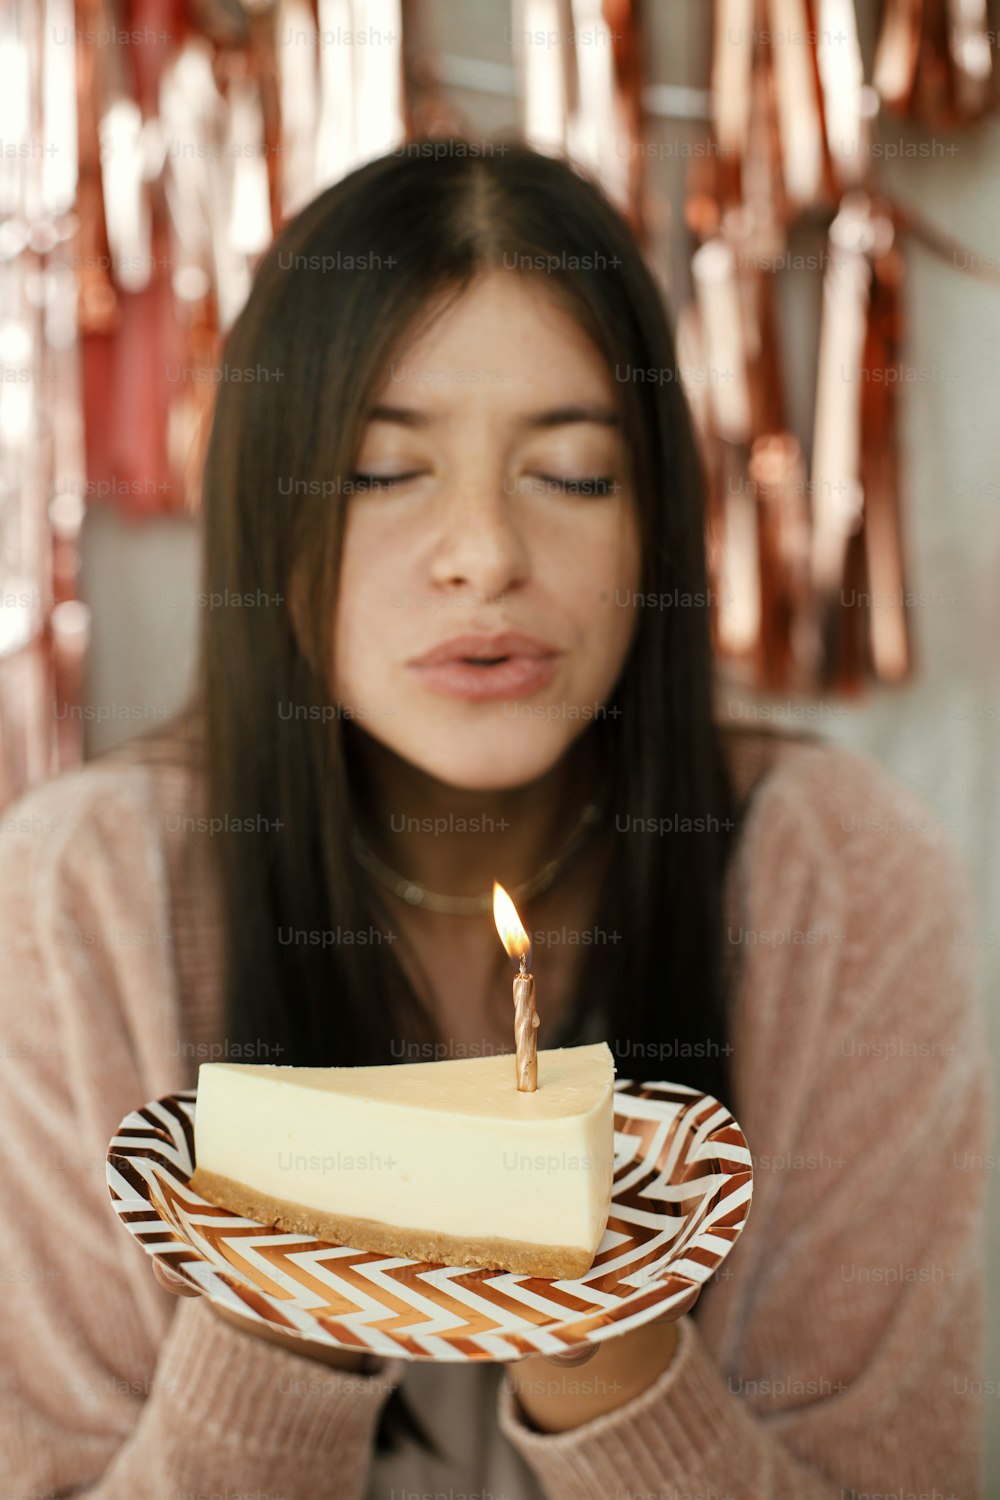 Pedazo de pastel de cumpleaños moderno con vela encendida en la mano sobre fondo de mujer feliz y guirnalda moderna de borlas de oro rosa en la habitación. Celebrando cumpleaños en casa. Pide un deseo